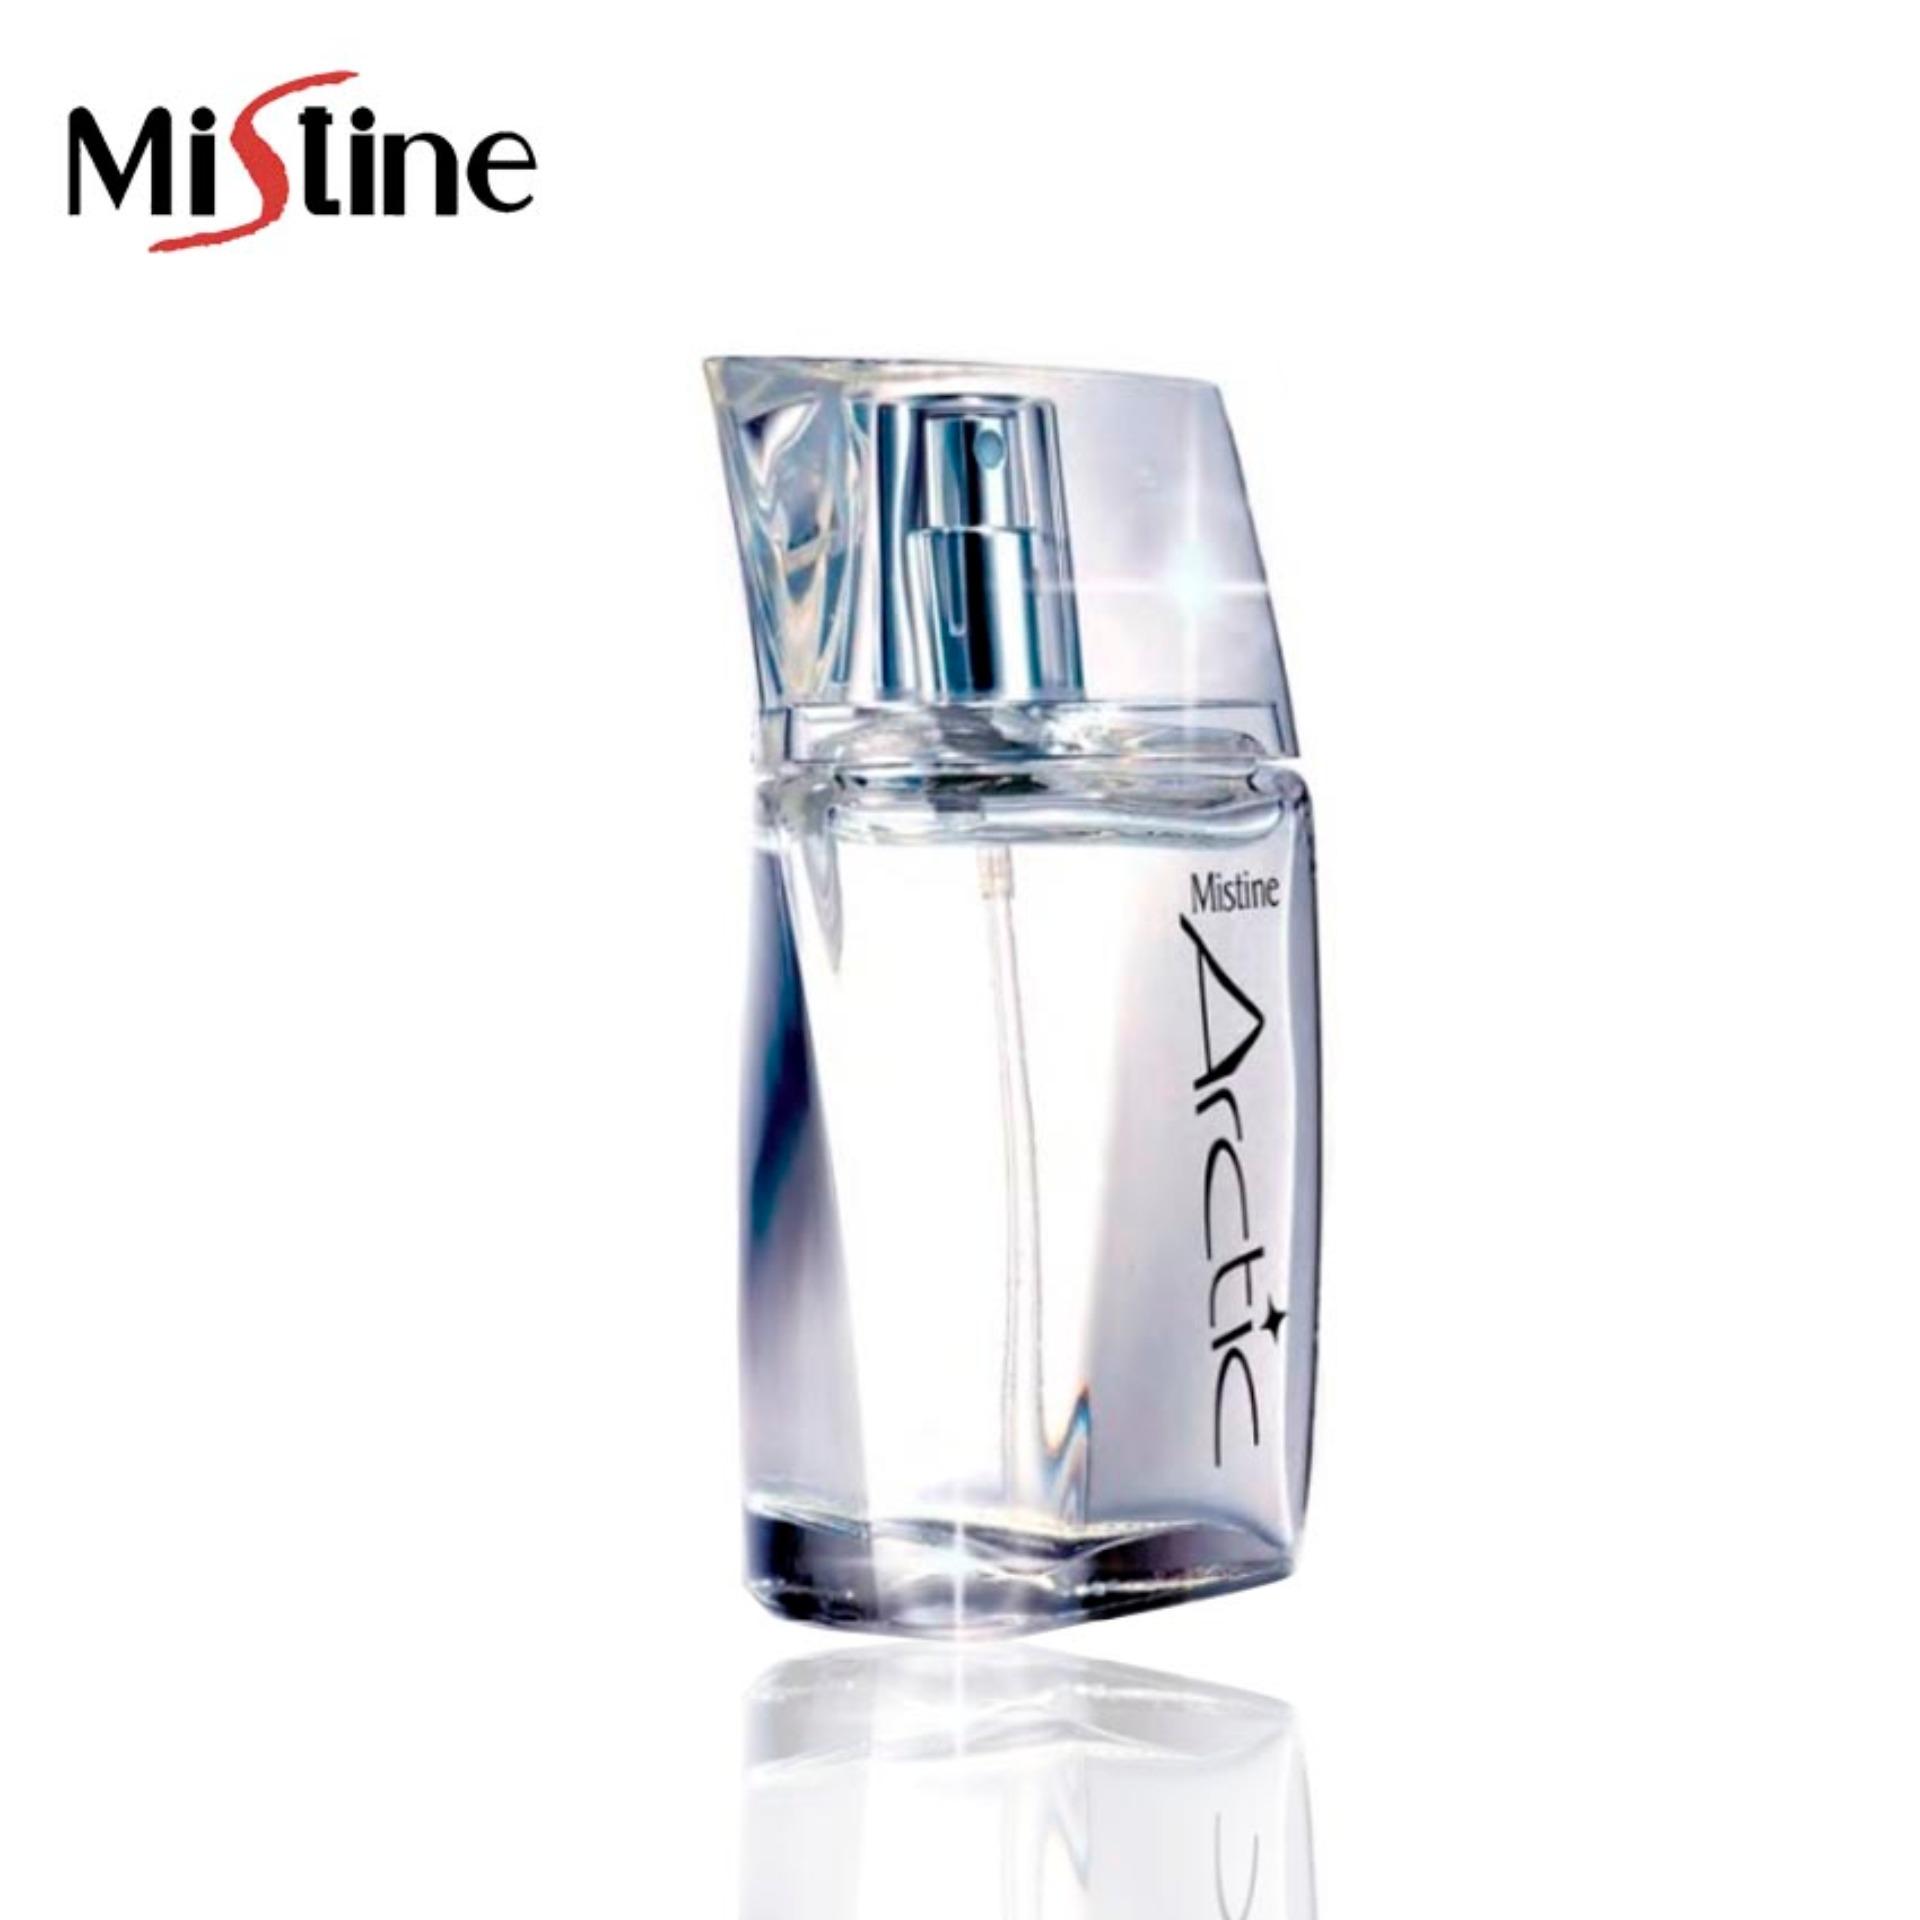 Mistine Arctic Perfume Spray 50 ml. มิสทีน อาร์คทิค เพอร์ฟูม สเปรย์ น้ำหอมผู้ชาย กลิ่นติดทนนาน สเปรย์น้ำหอม